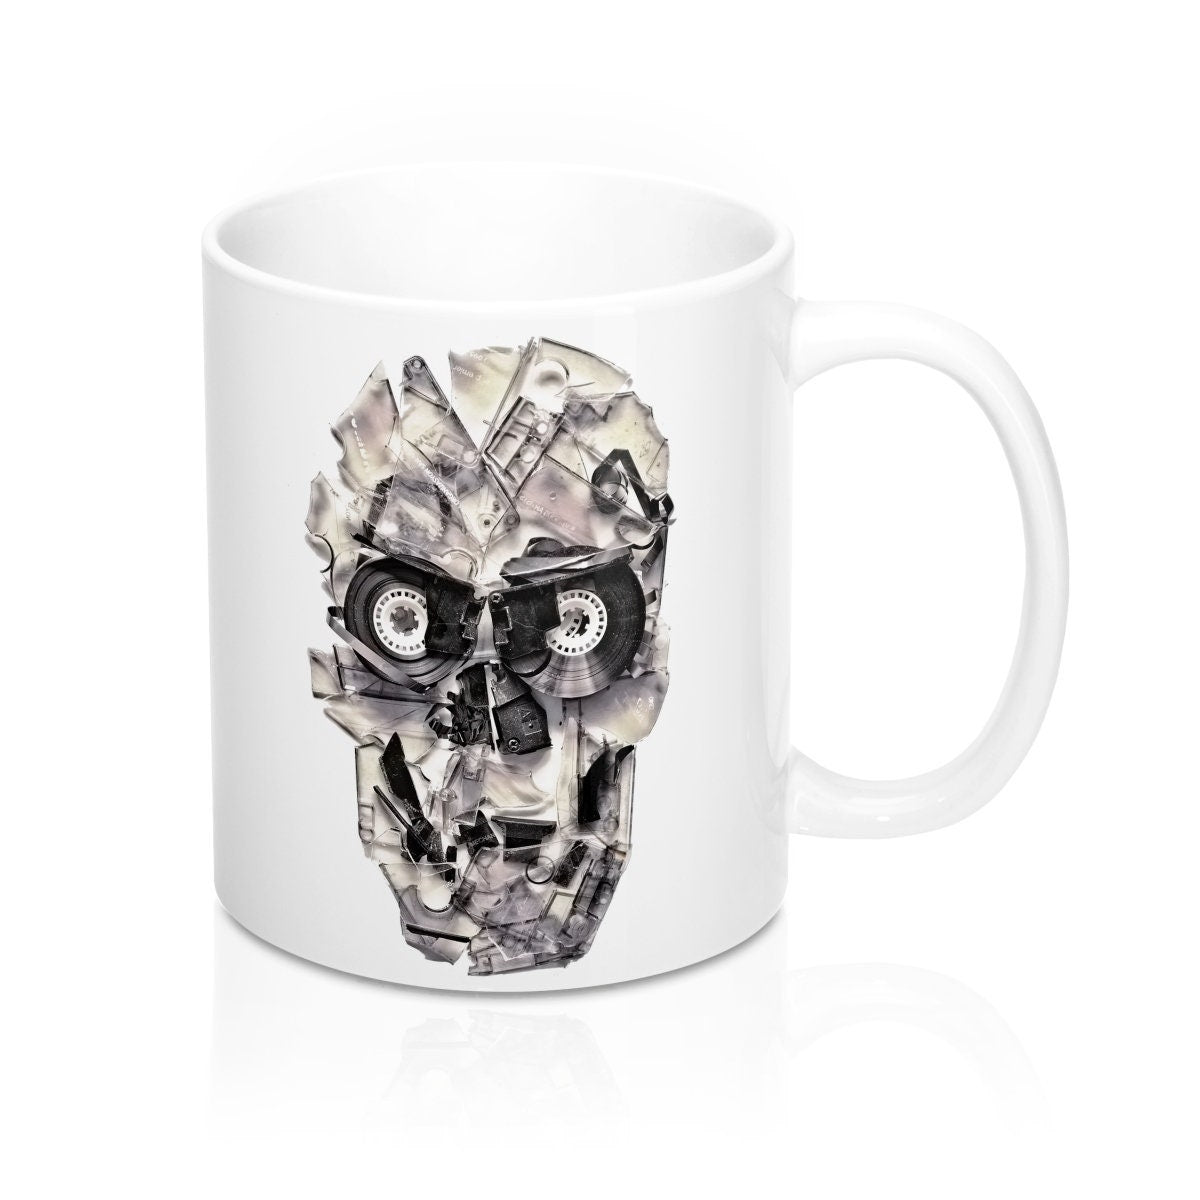 Music Skull Coffee Mug 11oz, Casette Tape Sugar Skull Mug Gift, Gothic Skull Ceramic Coffee Mug Gift, Broken Skull Mug Gift